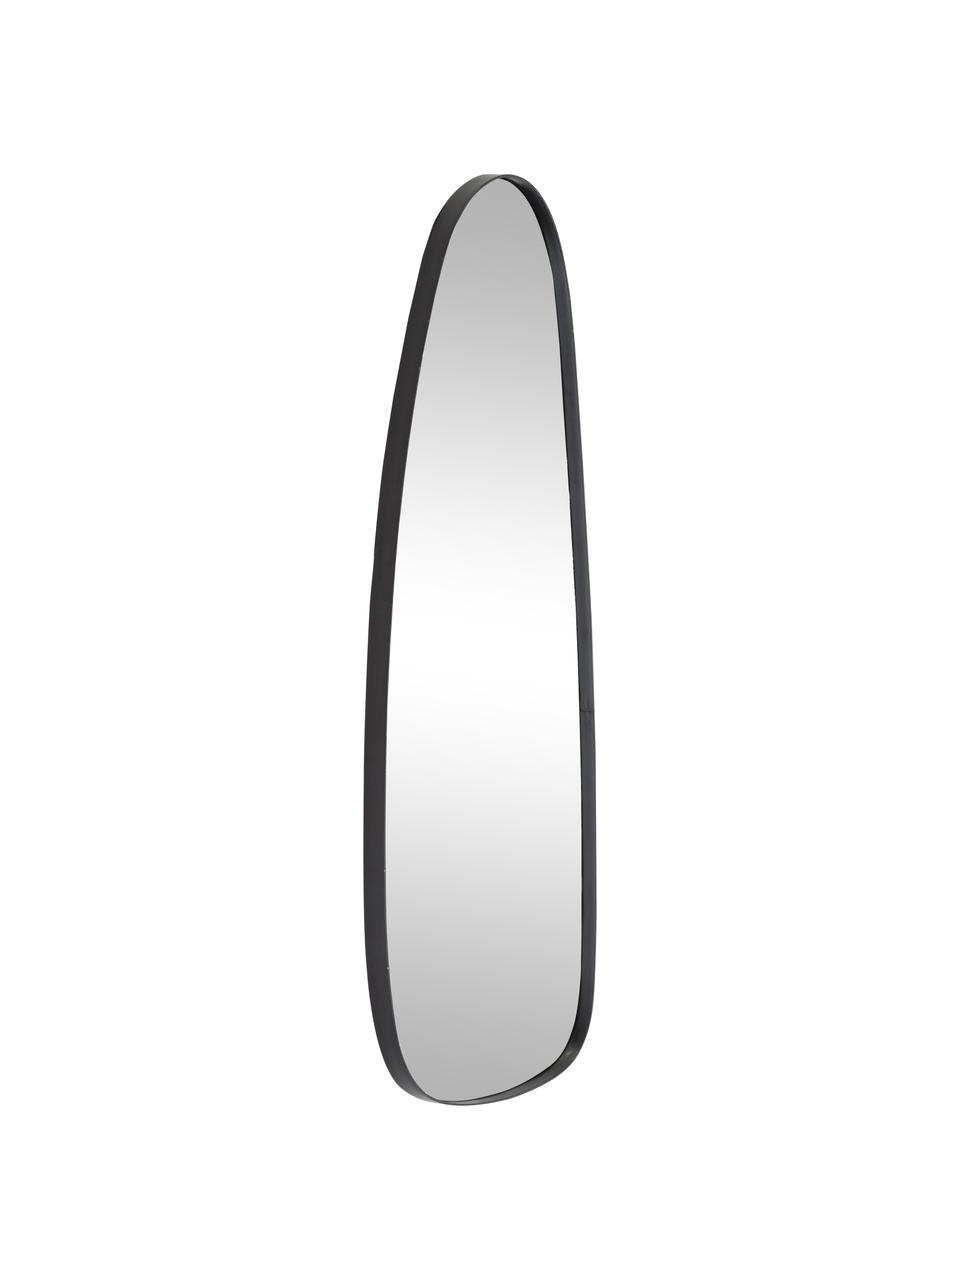 Ovale wandspiegel Codoll met zwarte metalen lijst, Frame: gelakt metaal, Lijst: zwart. Spiegelvlak: spiegelglas, 39 x 95 cm